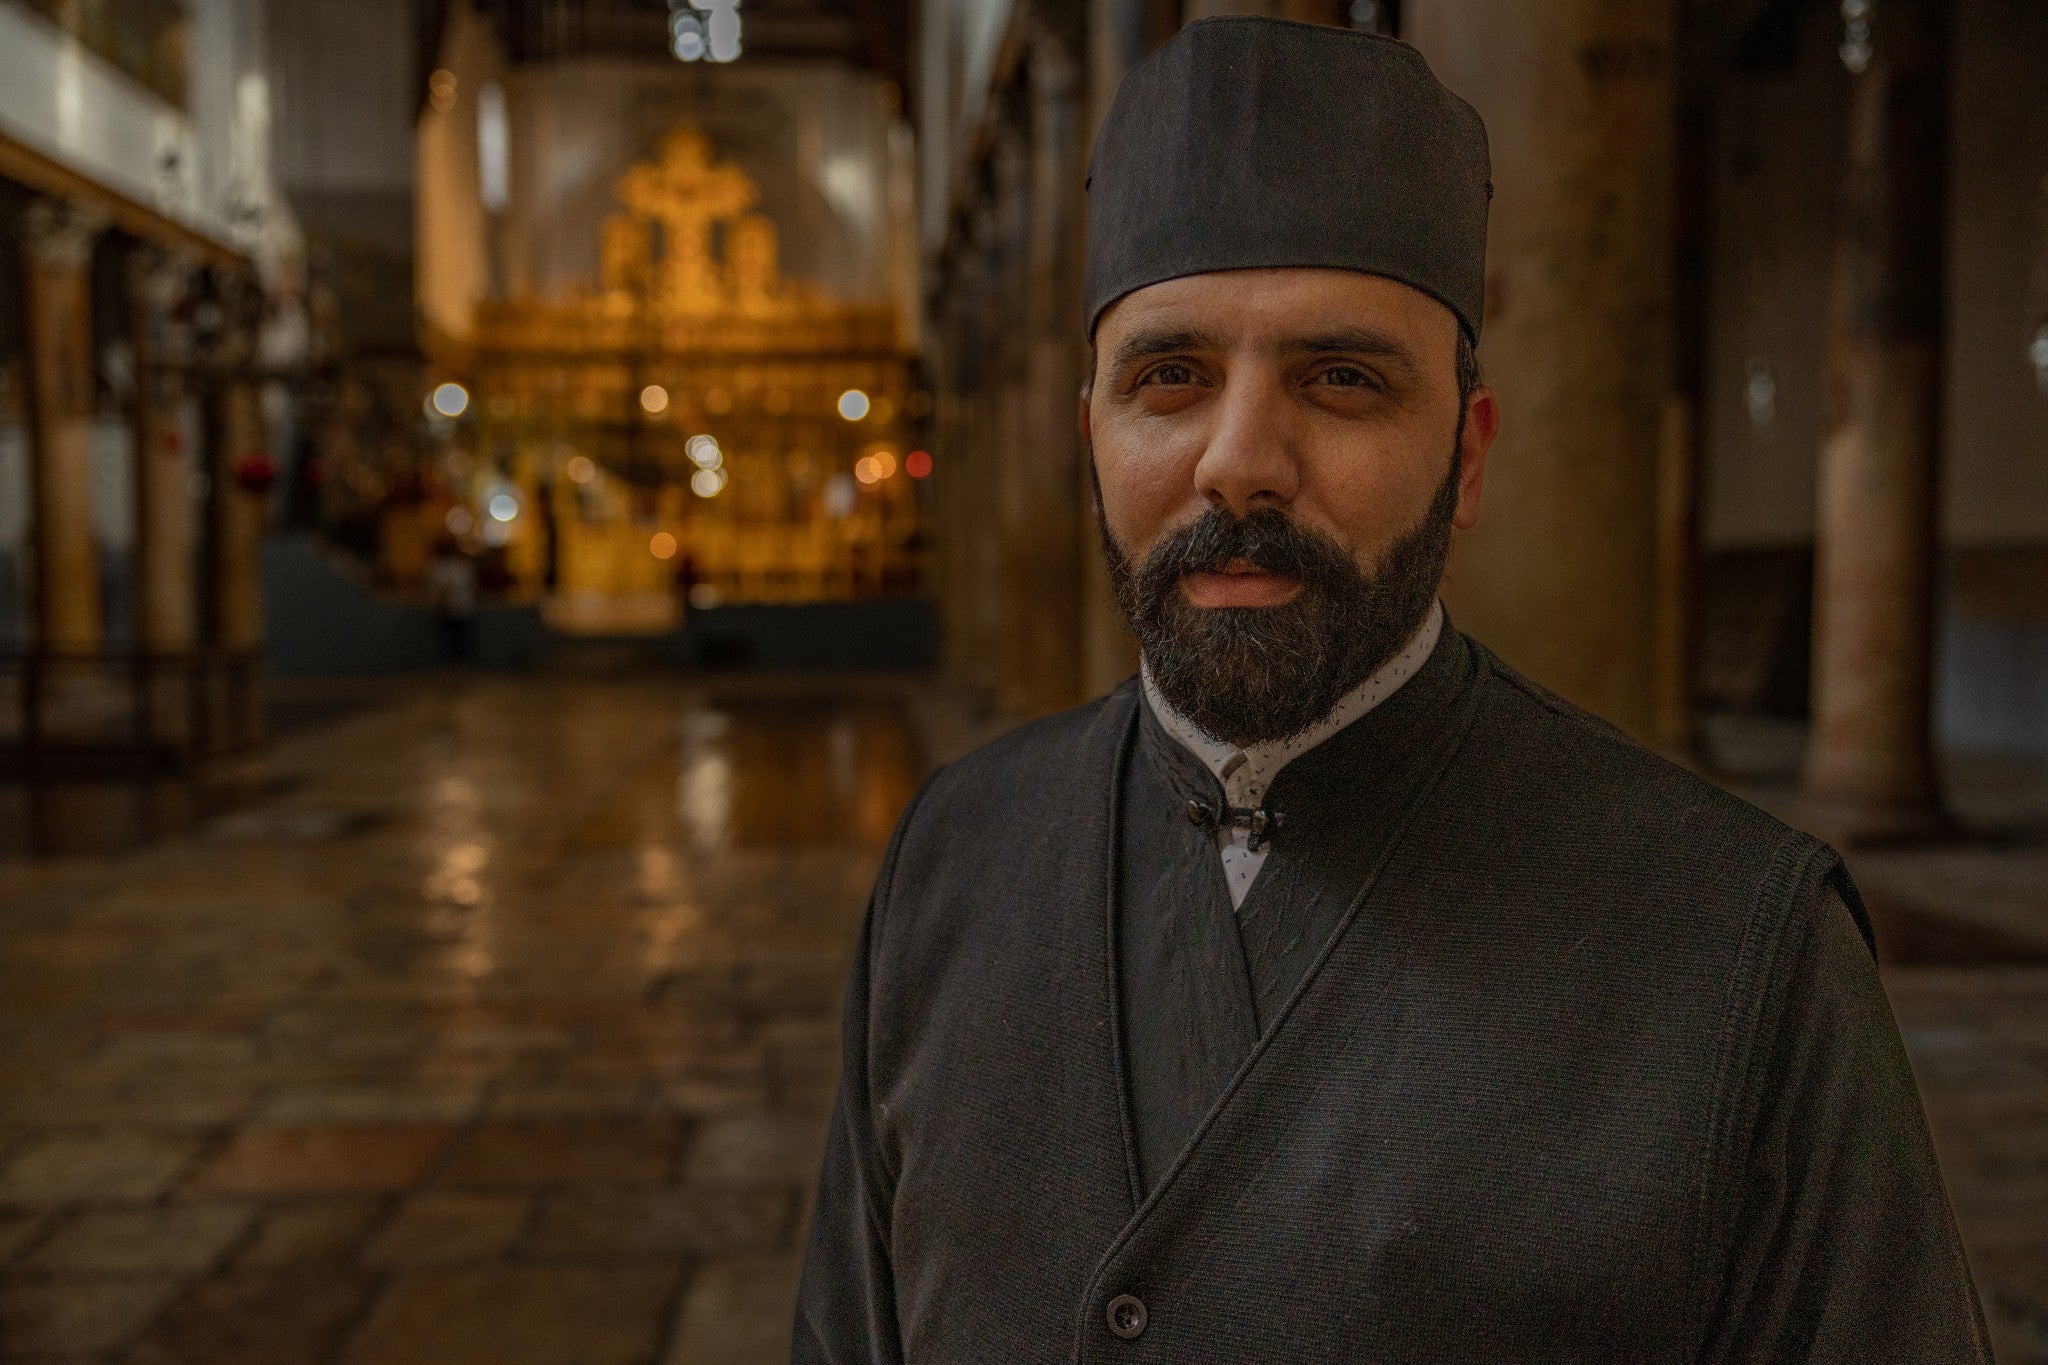 Father Issa Thaljieh, the Greek Orthodox parish priest